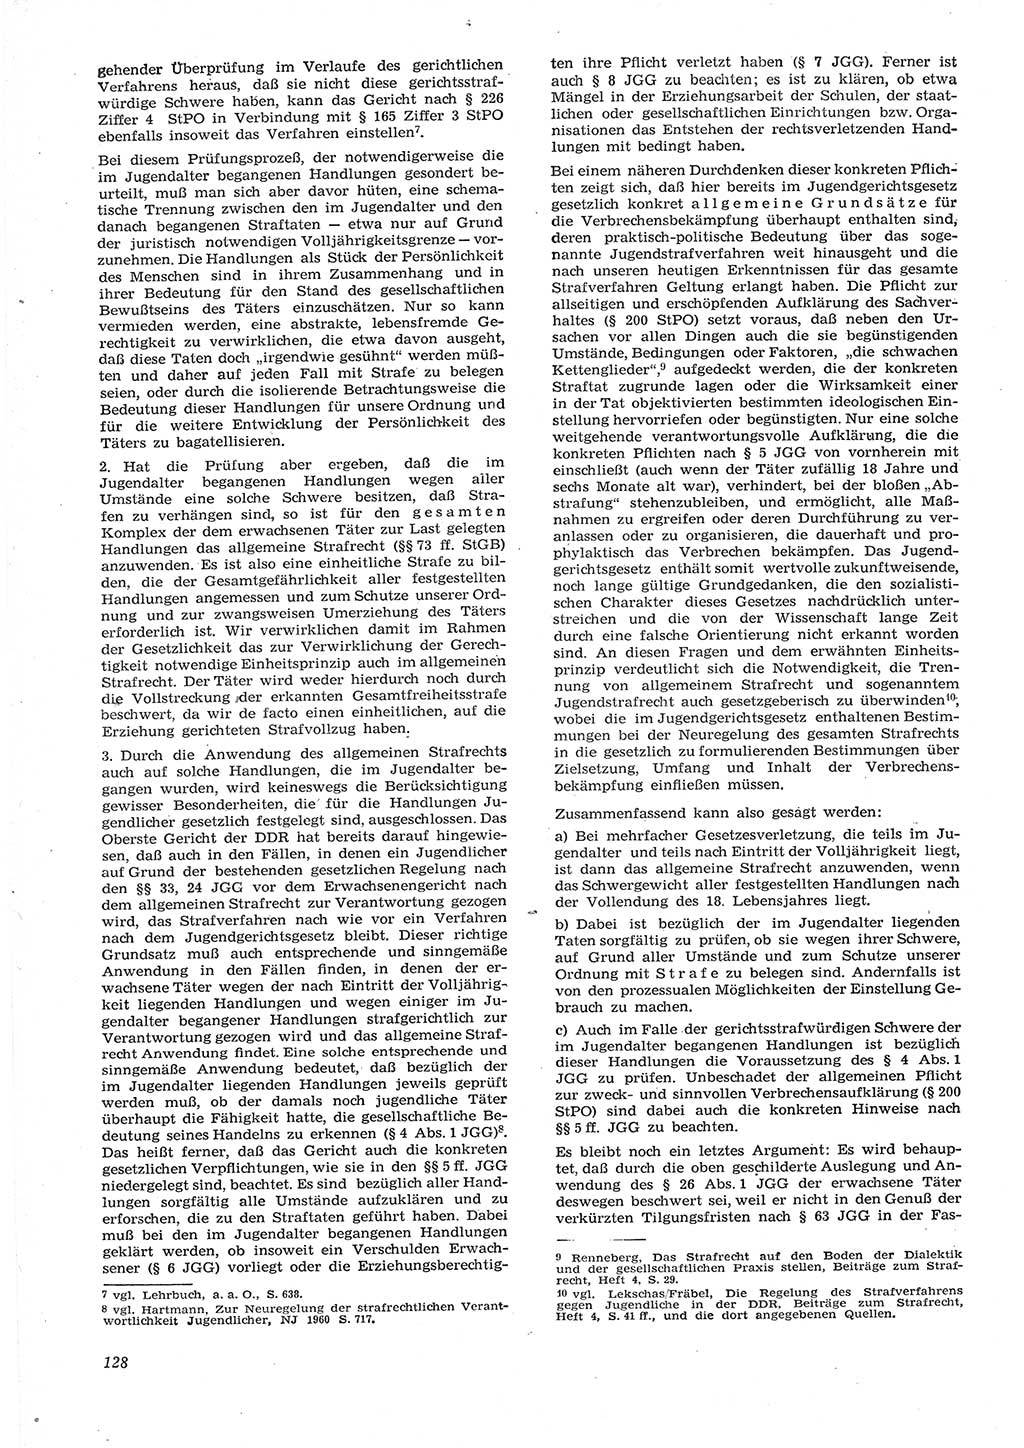 Neue Justiz (NJ), Zeitschrift für Recht und Rechtswissenschaft [Deutsche Demokratische Republik (DDR)], 15. Jahrgang 1961, Seite 128 (NJ DDR 1961, S. 128)